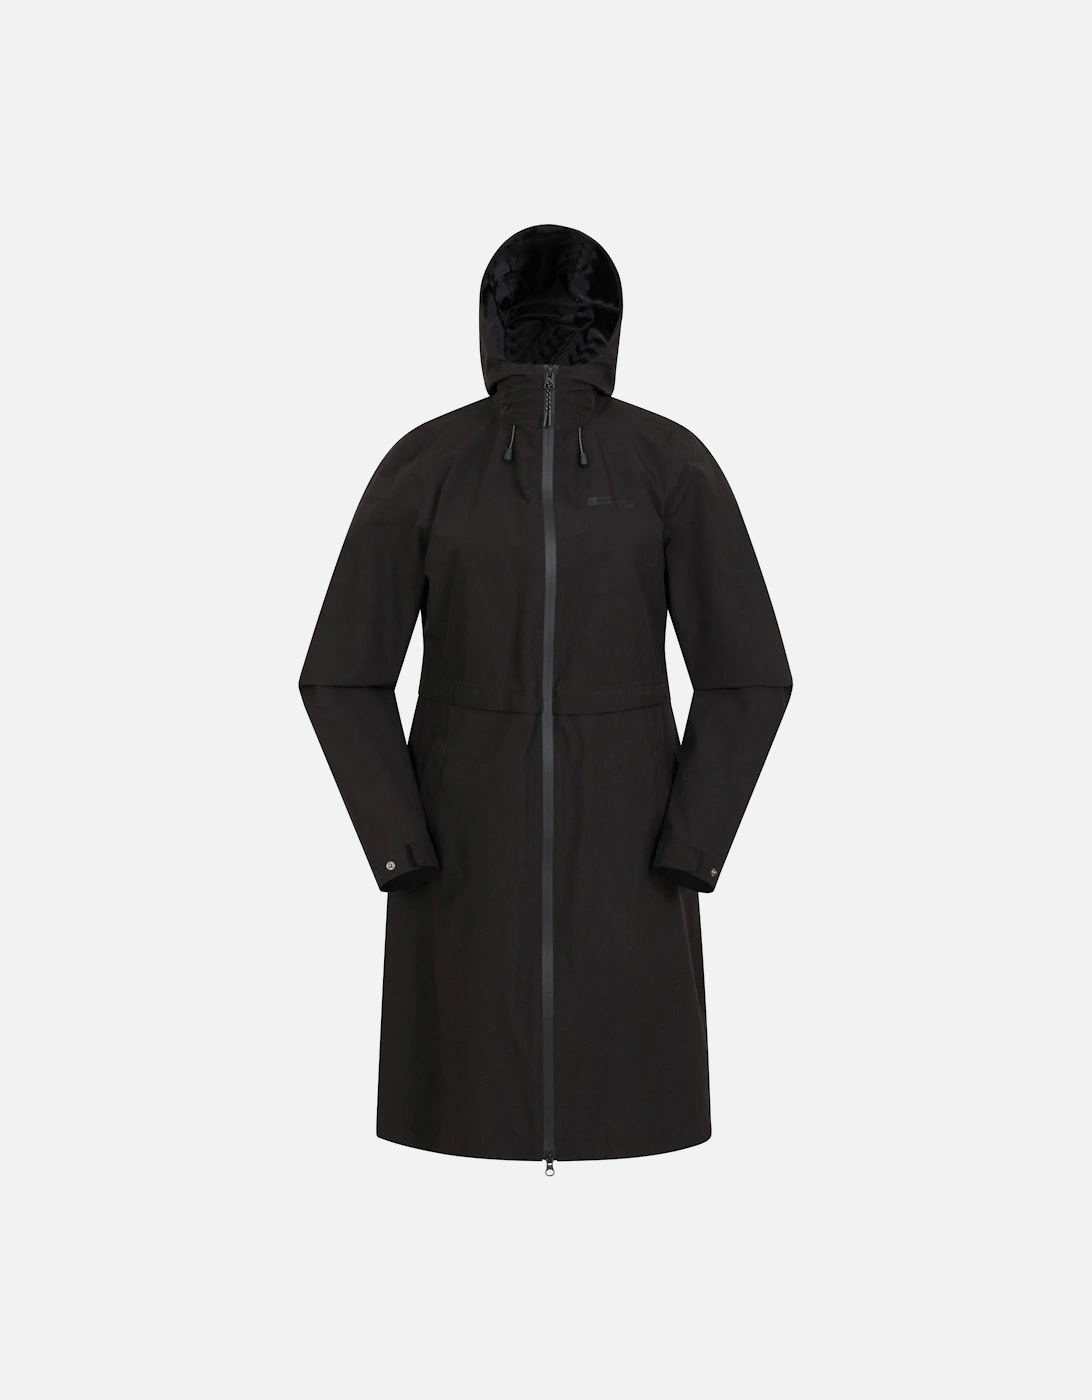 Womens/Ladies Hilltop Extra Long Waterproof Jacket, 5 of 4